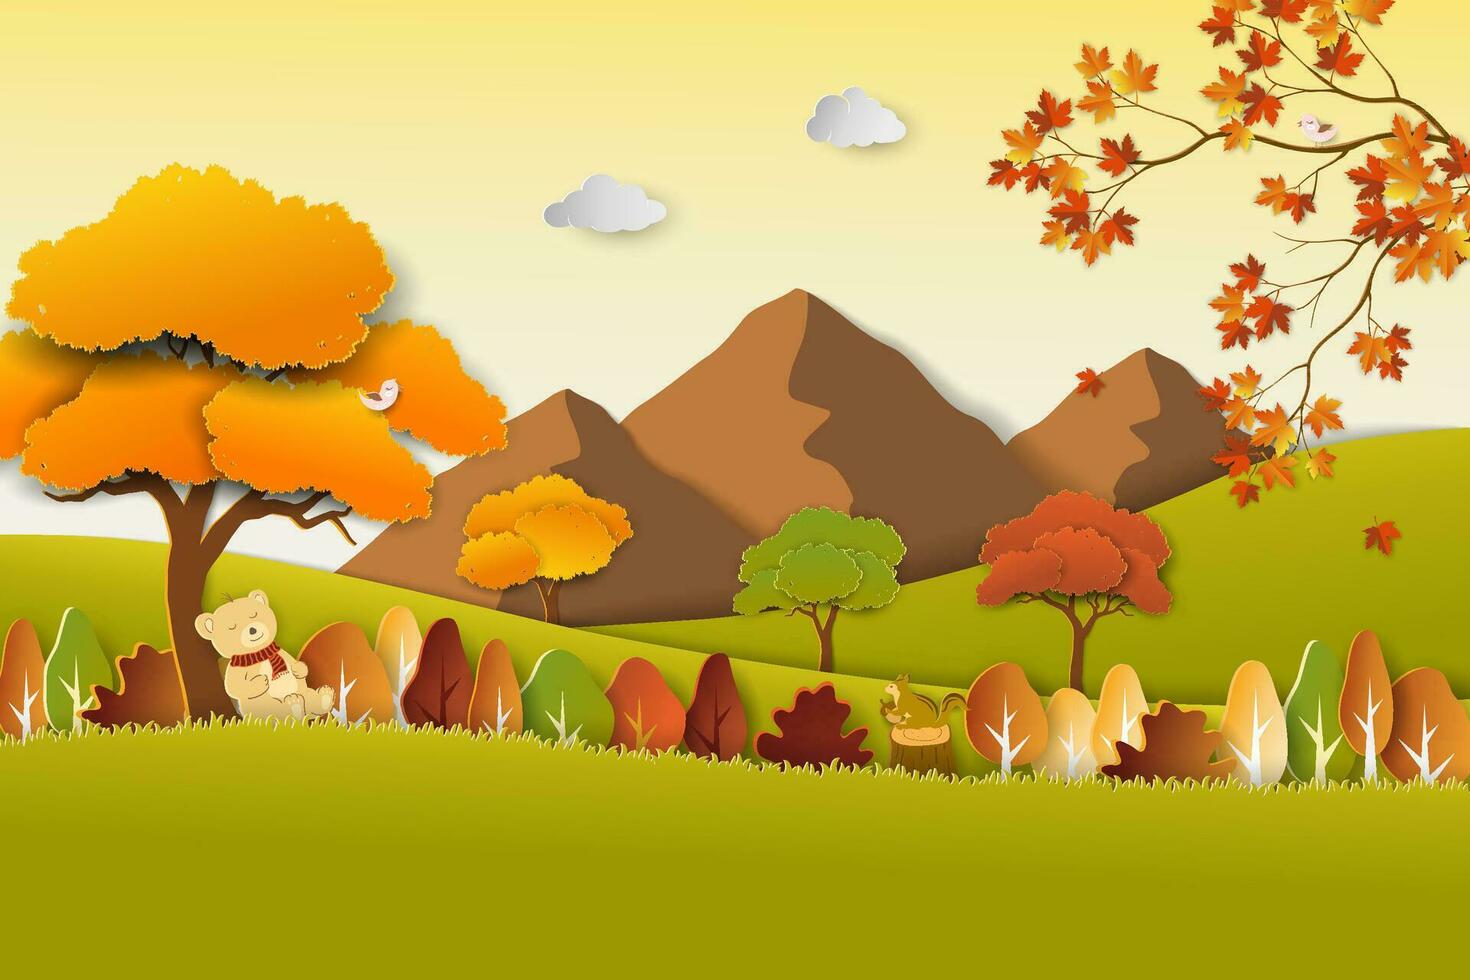 viagem com natureza cenário em outono paisagem, papel arte colorida árvores e folhas em outono estação vetor